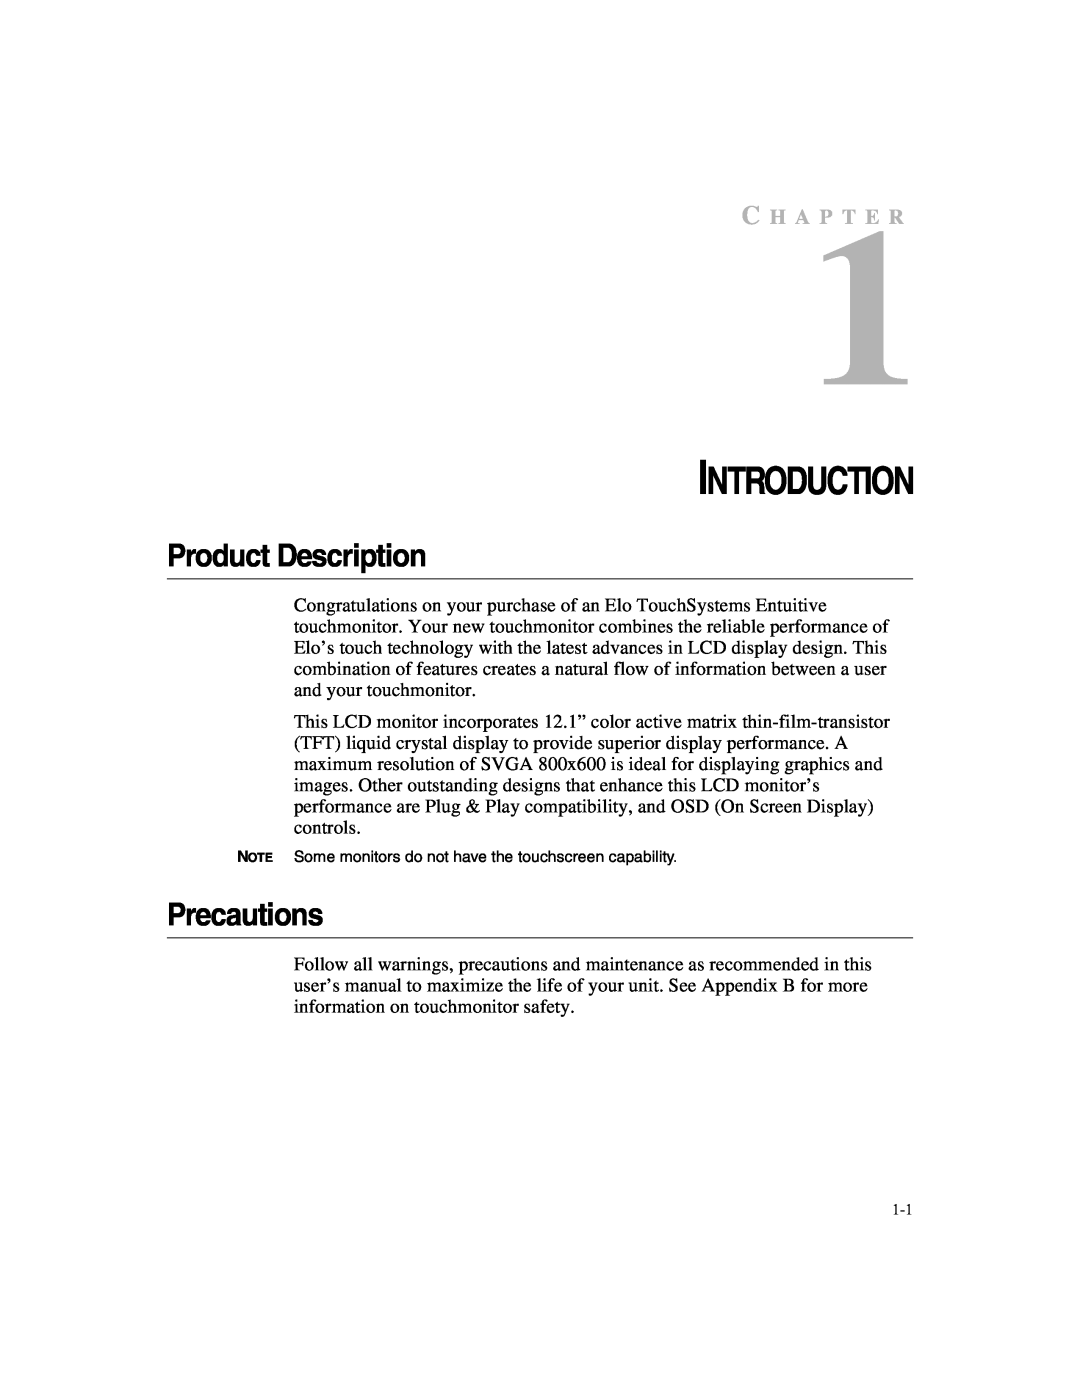 Elo TouchSystems 1247L manual Introduction, Product Description, Precautions, C H A P T E R 